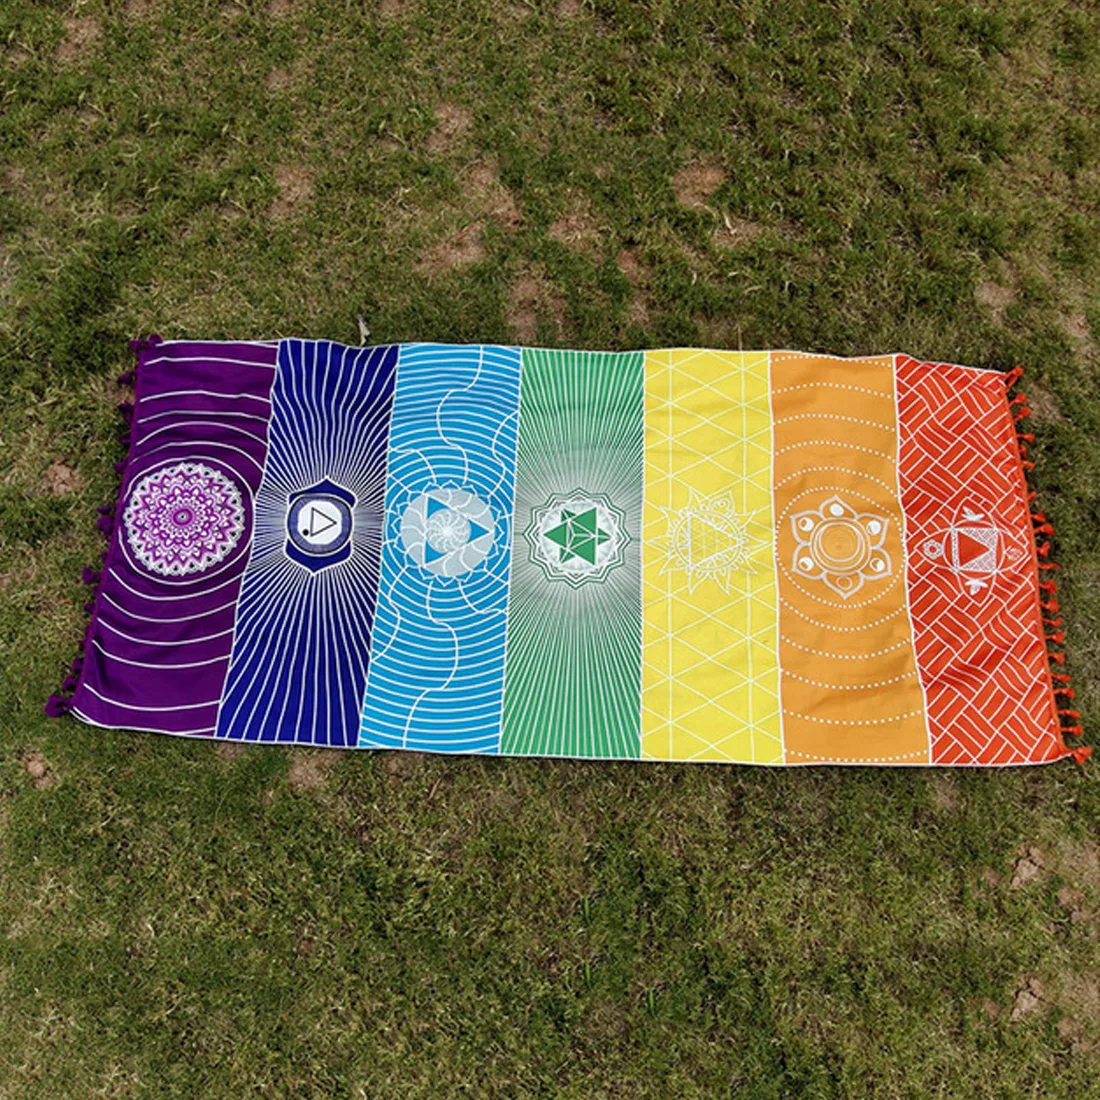 Domov Polyester Bohemia Stene Visí India Mandala Deka 7 Čakra Farebné Gobelín Rainbow Pruhy Cestovné Pláži Yoga Mat